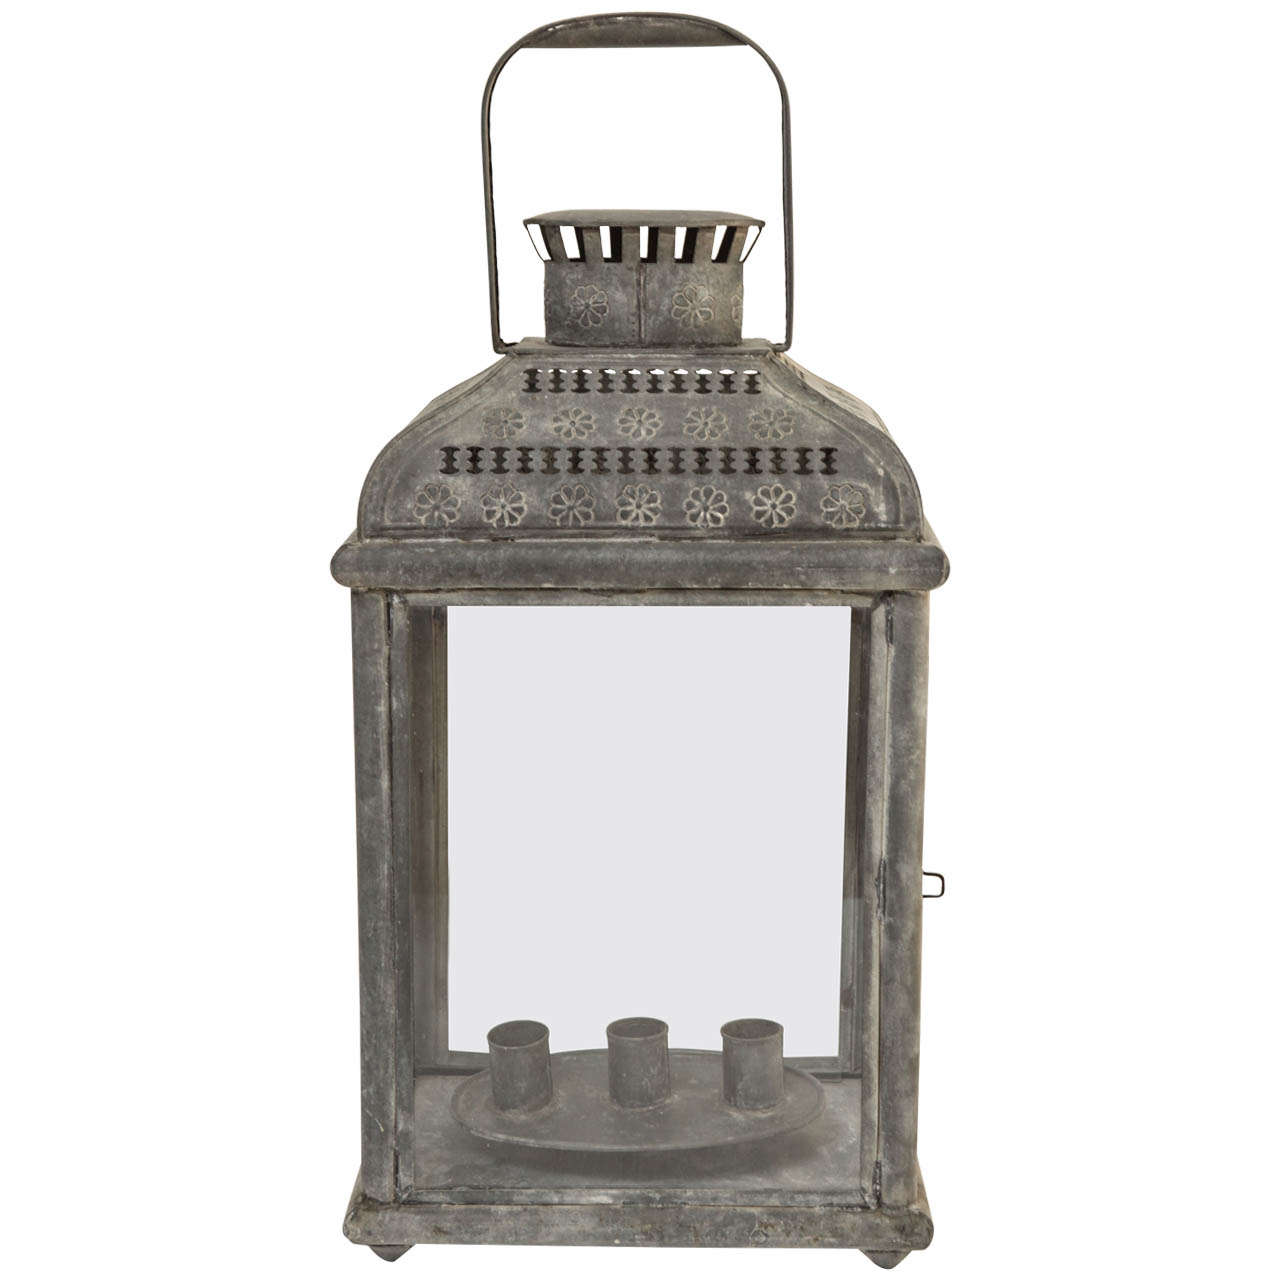 Vintage Metal Candle Lantern